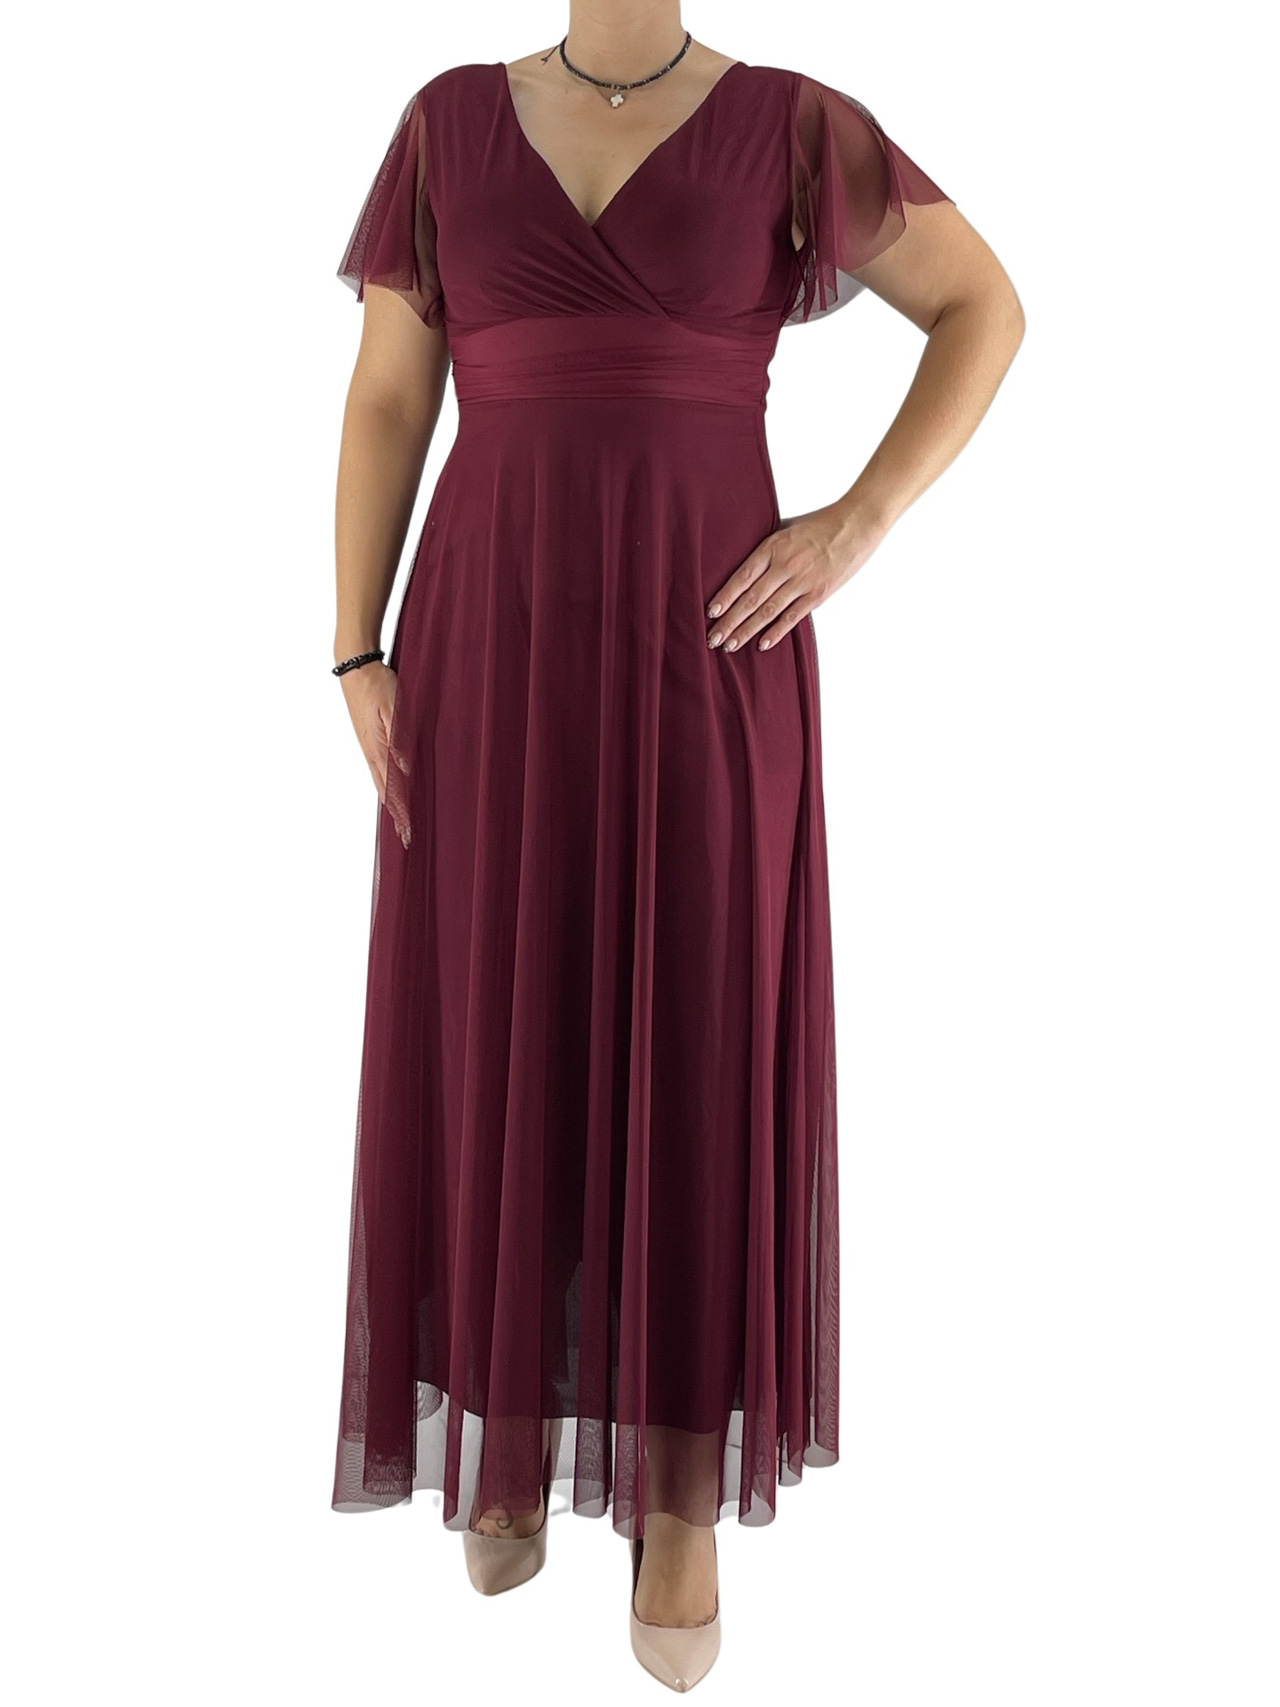 Φόρεμα maxi μονόχρωμο με τούλι κωδ. 3589 μπροστινή όψη- μπορντό